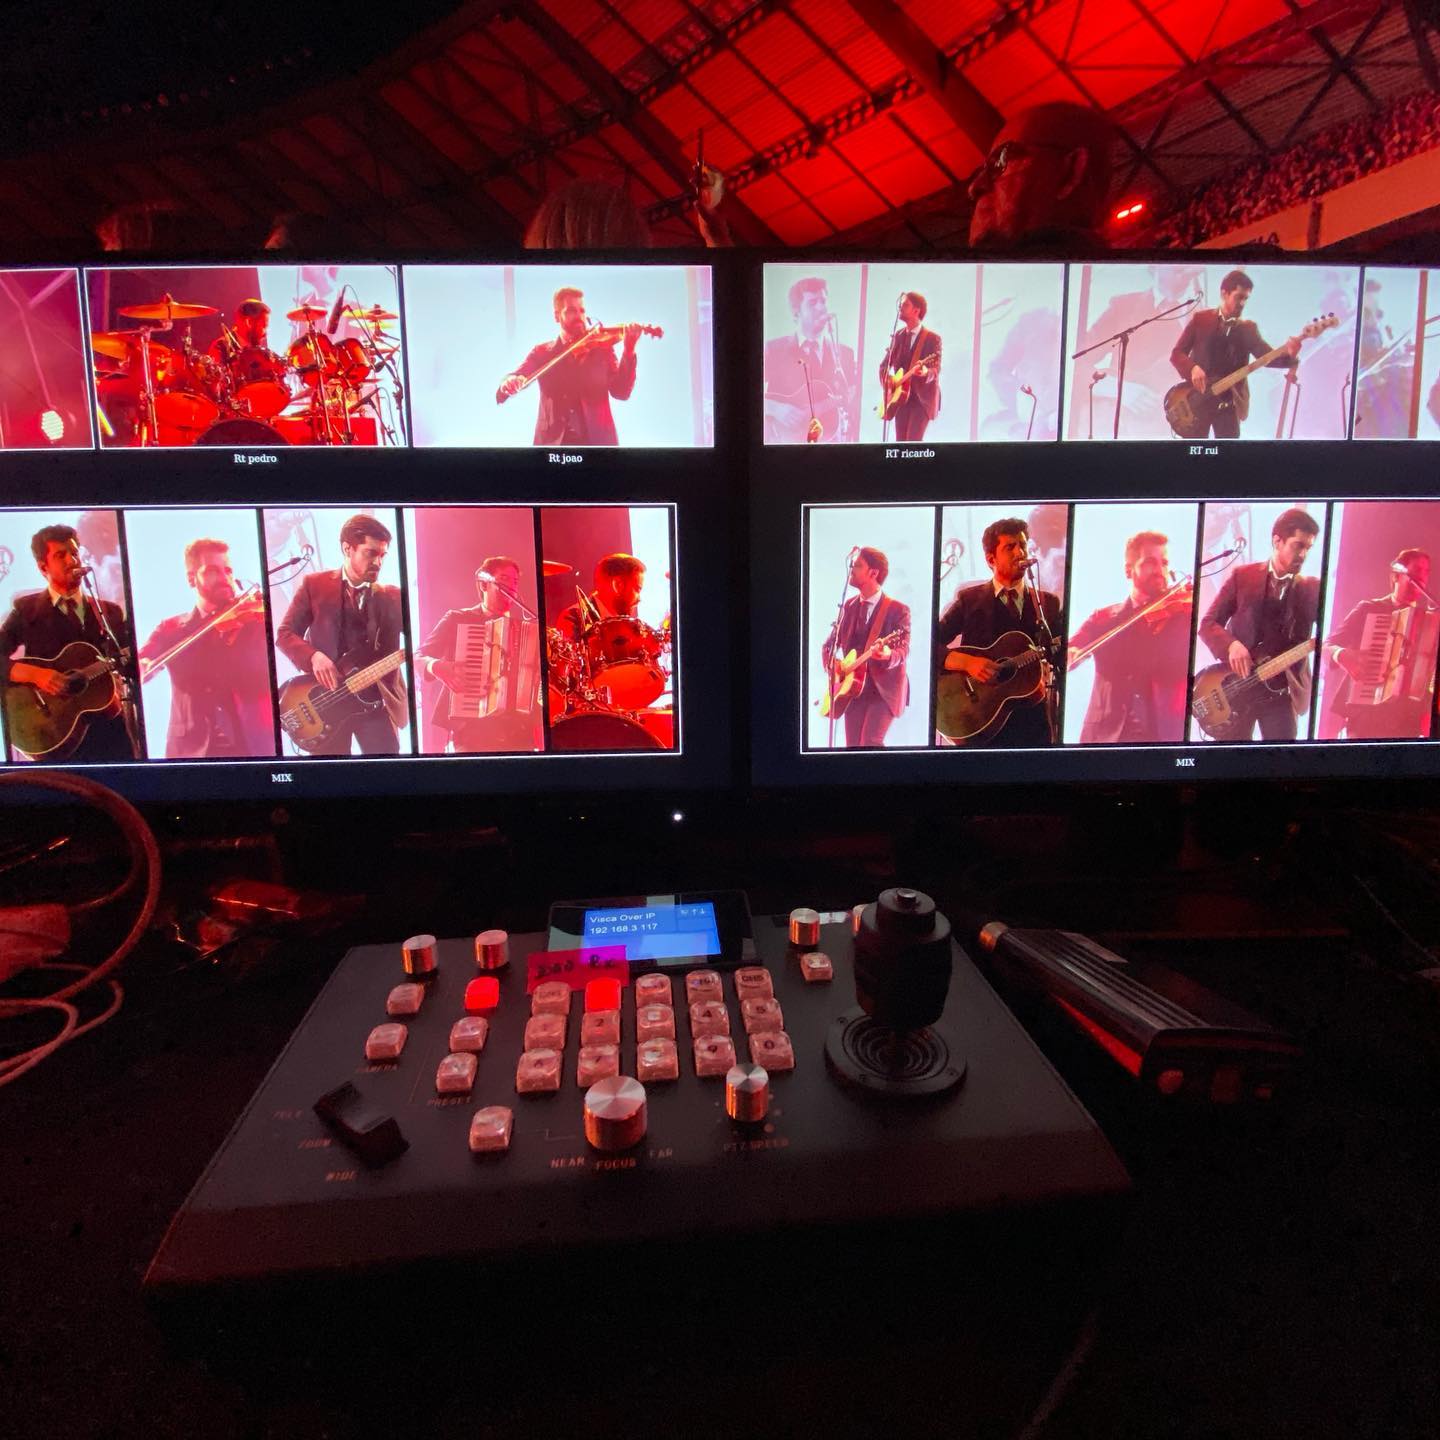 Os quatro e meia live concert, robotic camera operation for @light.rent 

Operação de câmaras robotizadas no concerto dos quatro e meia, para a @light.rent 

#threesixtypt #threesixtyvideoparaeventos #livemusic #liveevents